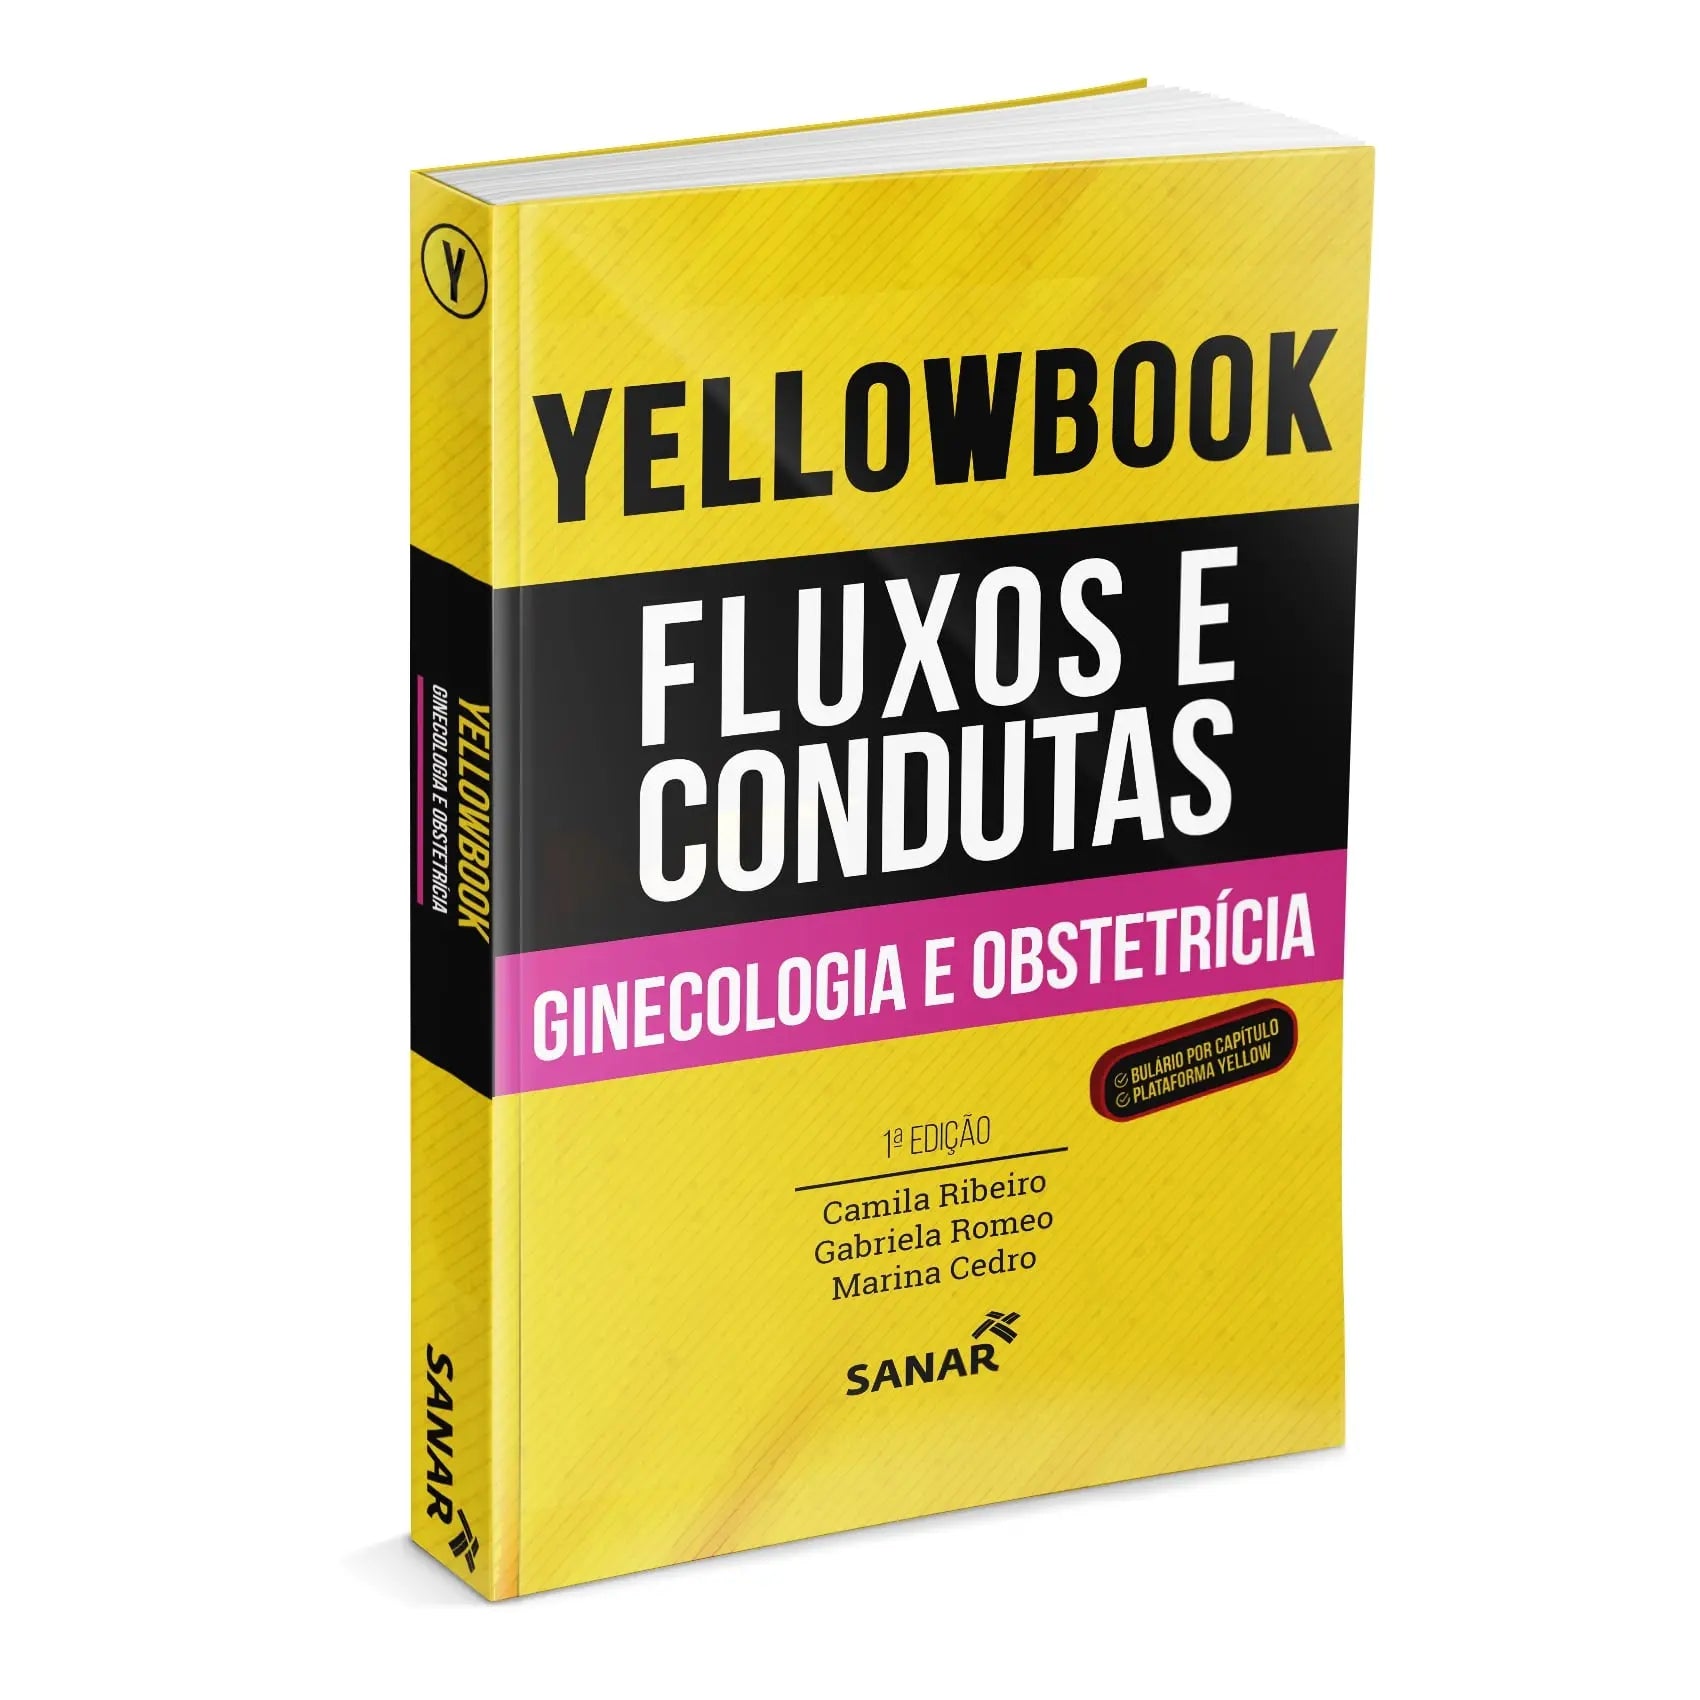 Imagem do livro Yellowbook - Fluxos e Condutas: Ginecologia e Obstetrícia